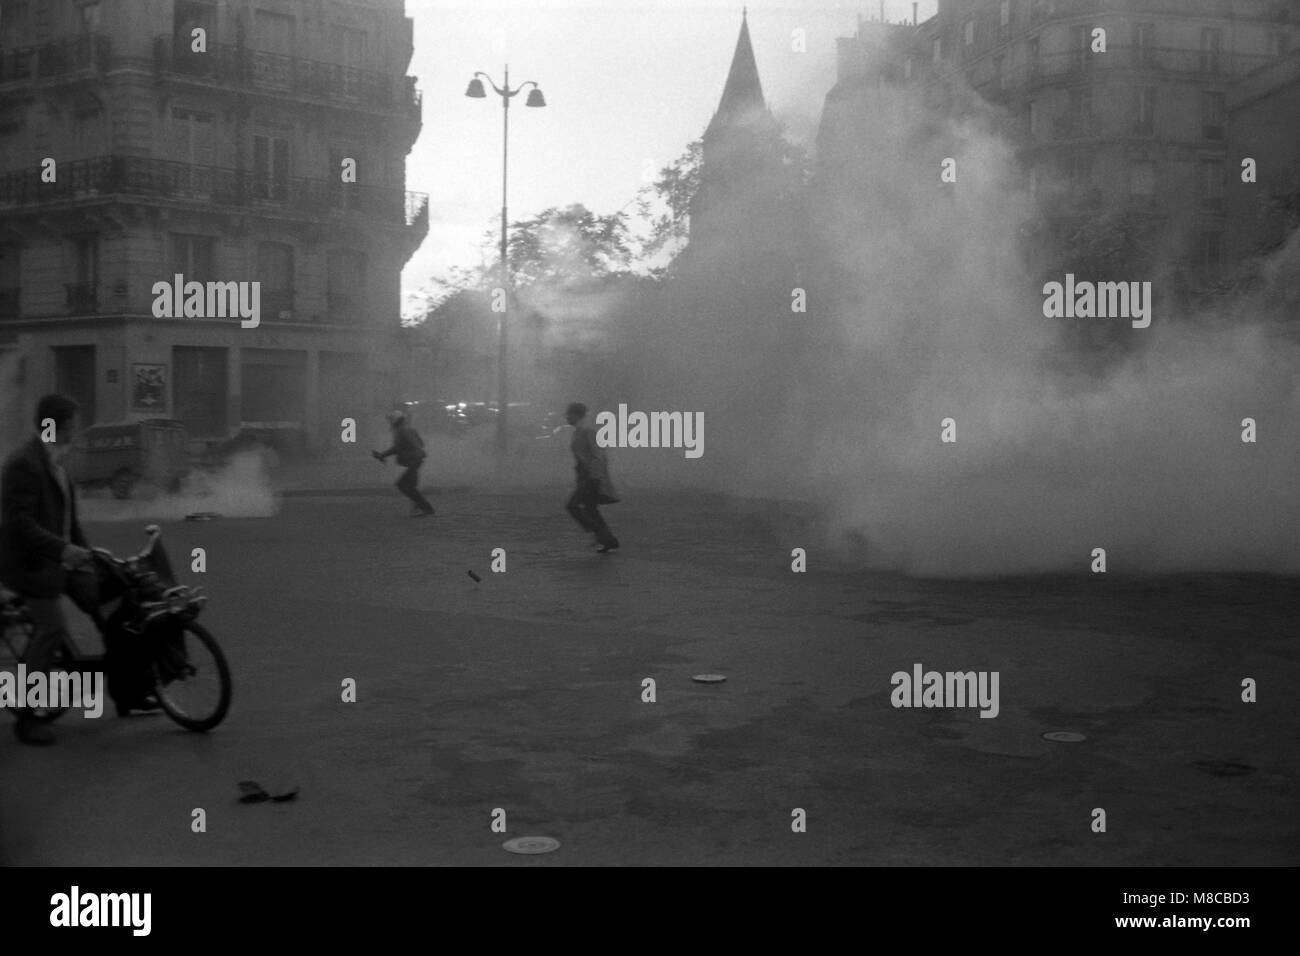 Philippe Gras / Le Pictorium -   -  1968  -  France / Ile-de-France (region) / Paris  -  Tear gas against pavement in the streets of Paris Stock Photo